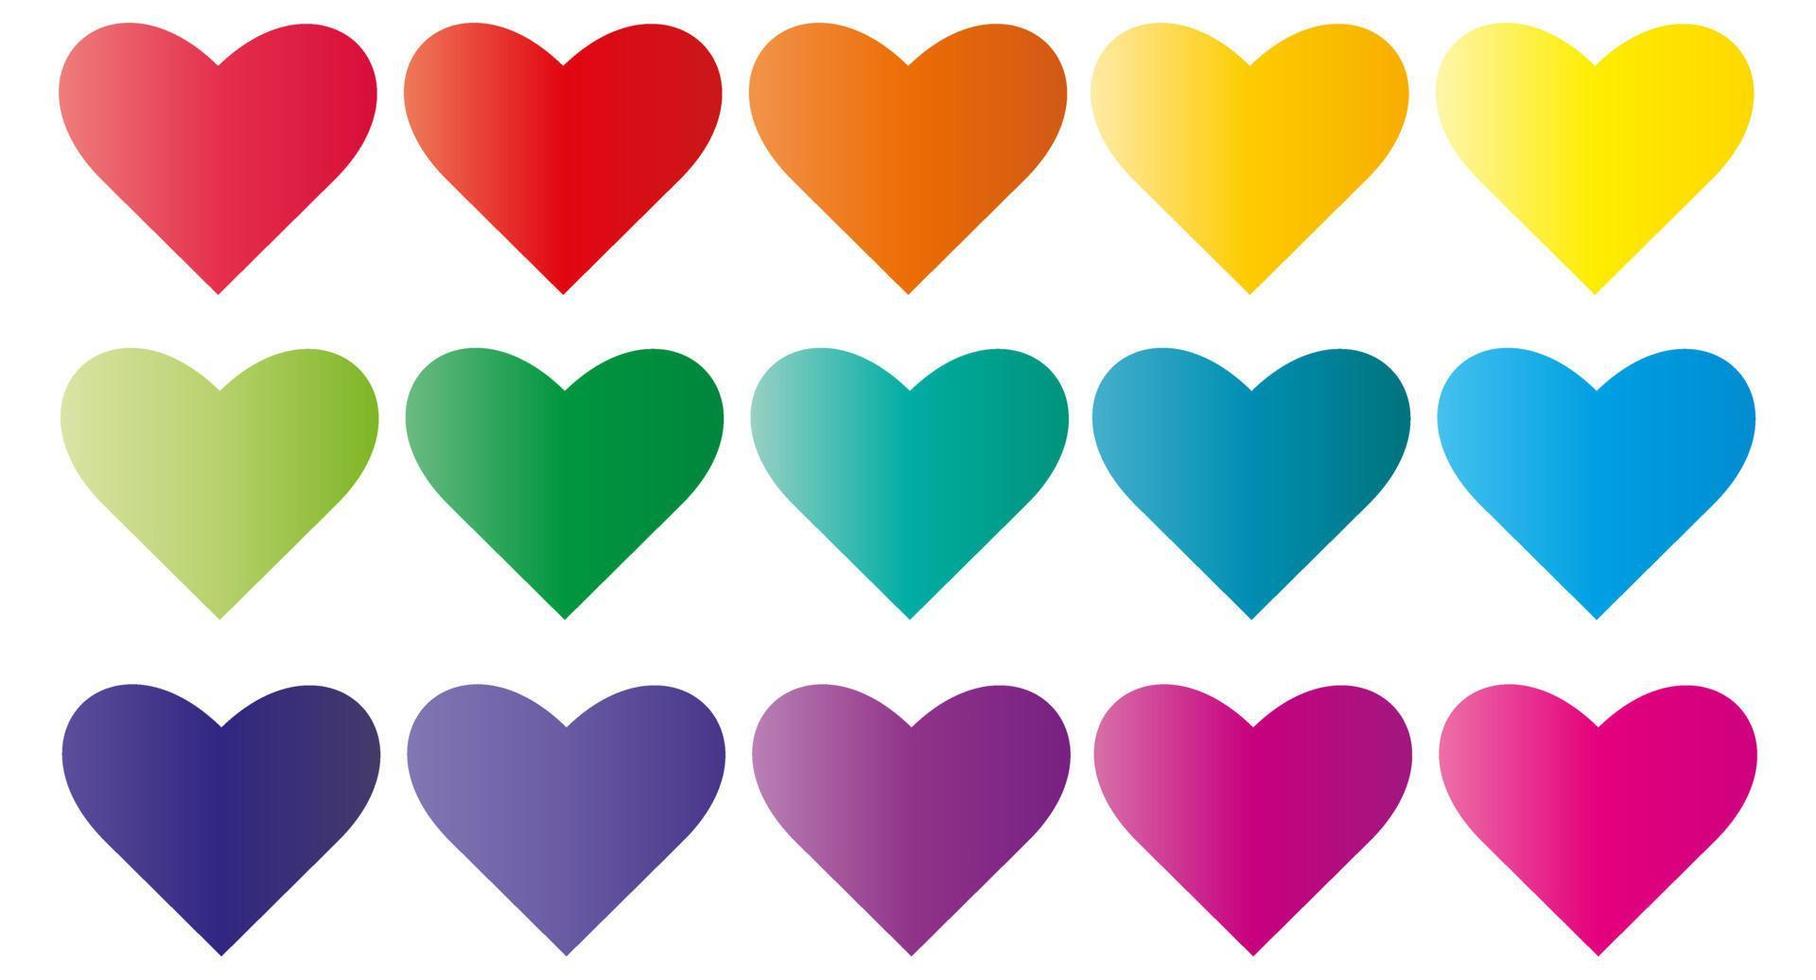 Herz-Vektor-Design. Farbverlauf-Herz-Set. farbige Herzkollektion. Valentinstag. Vektor-Illustration isoliert auf weißem Hintergrund vektor